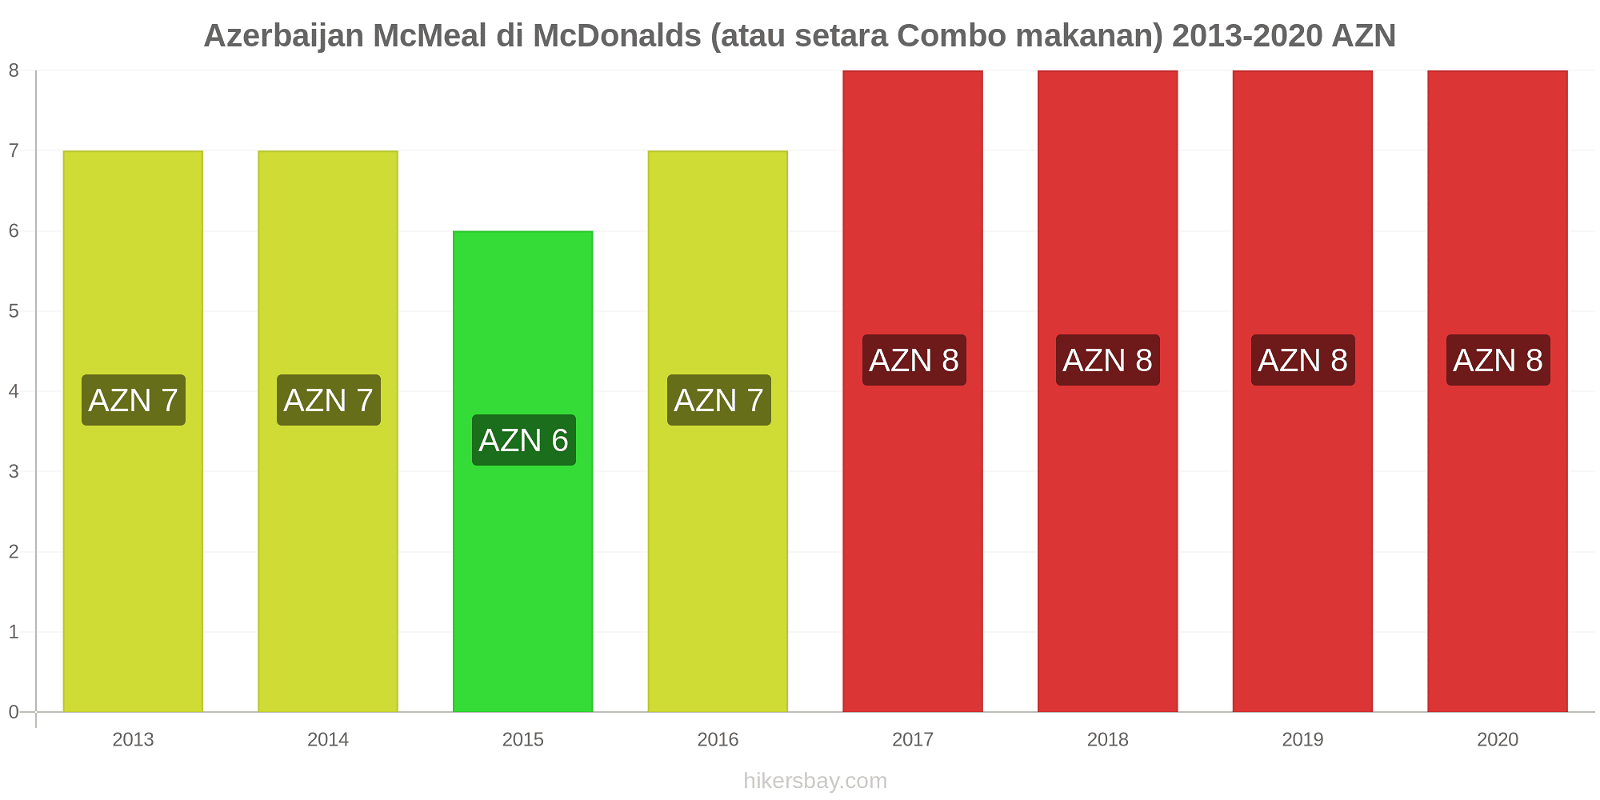 Azerbaijan perubahan harga McMeal di McDonalds (atau setara Combo makanan) hikersbay.com